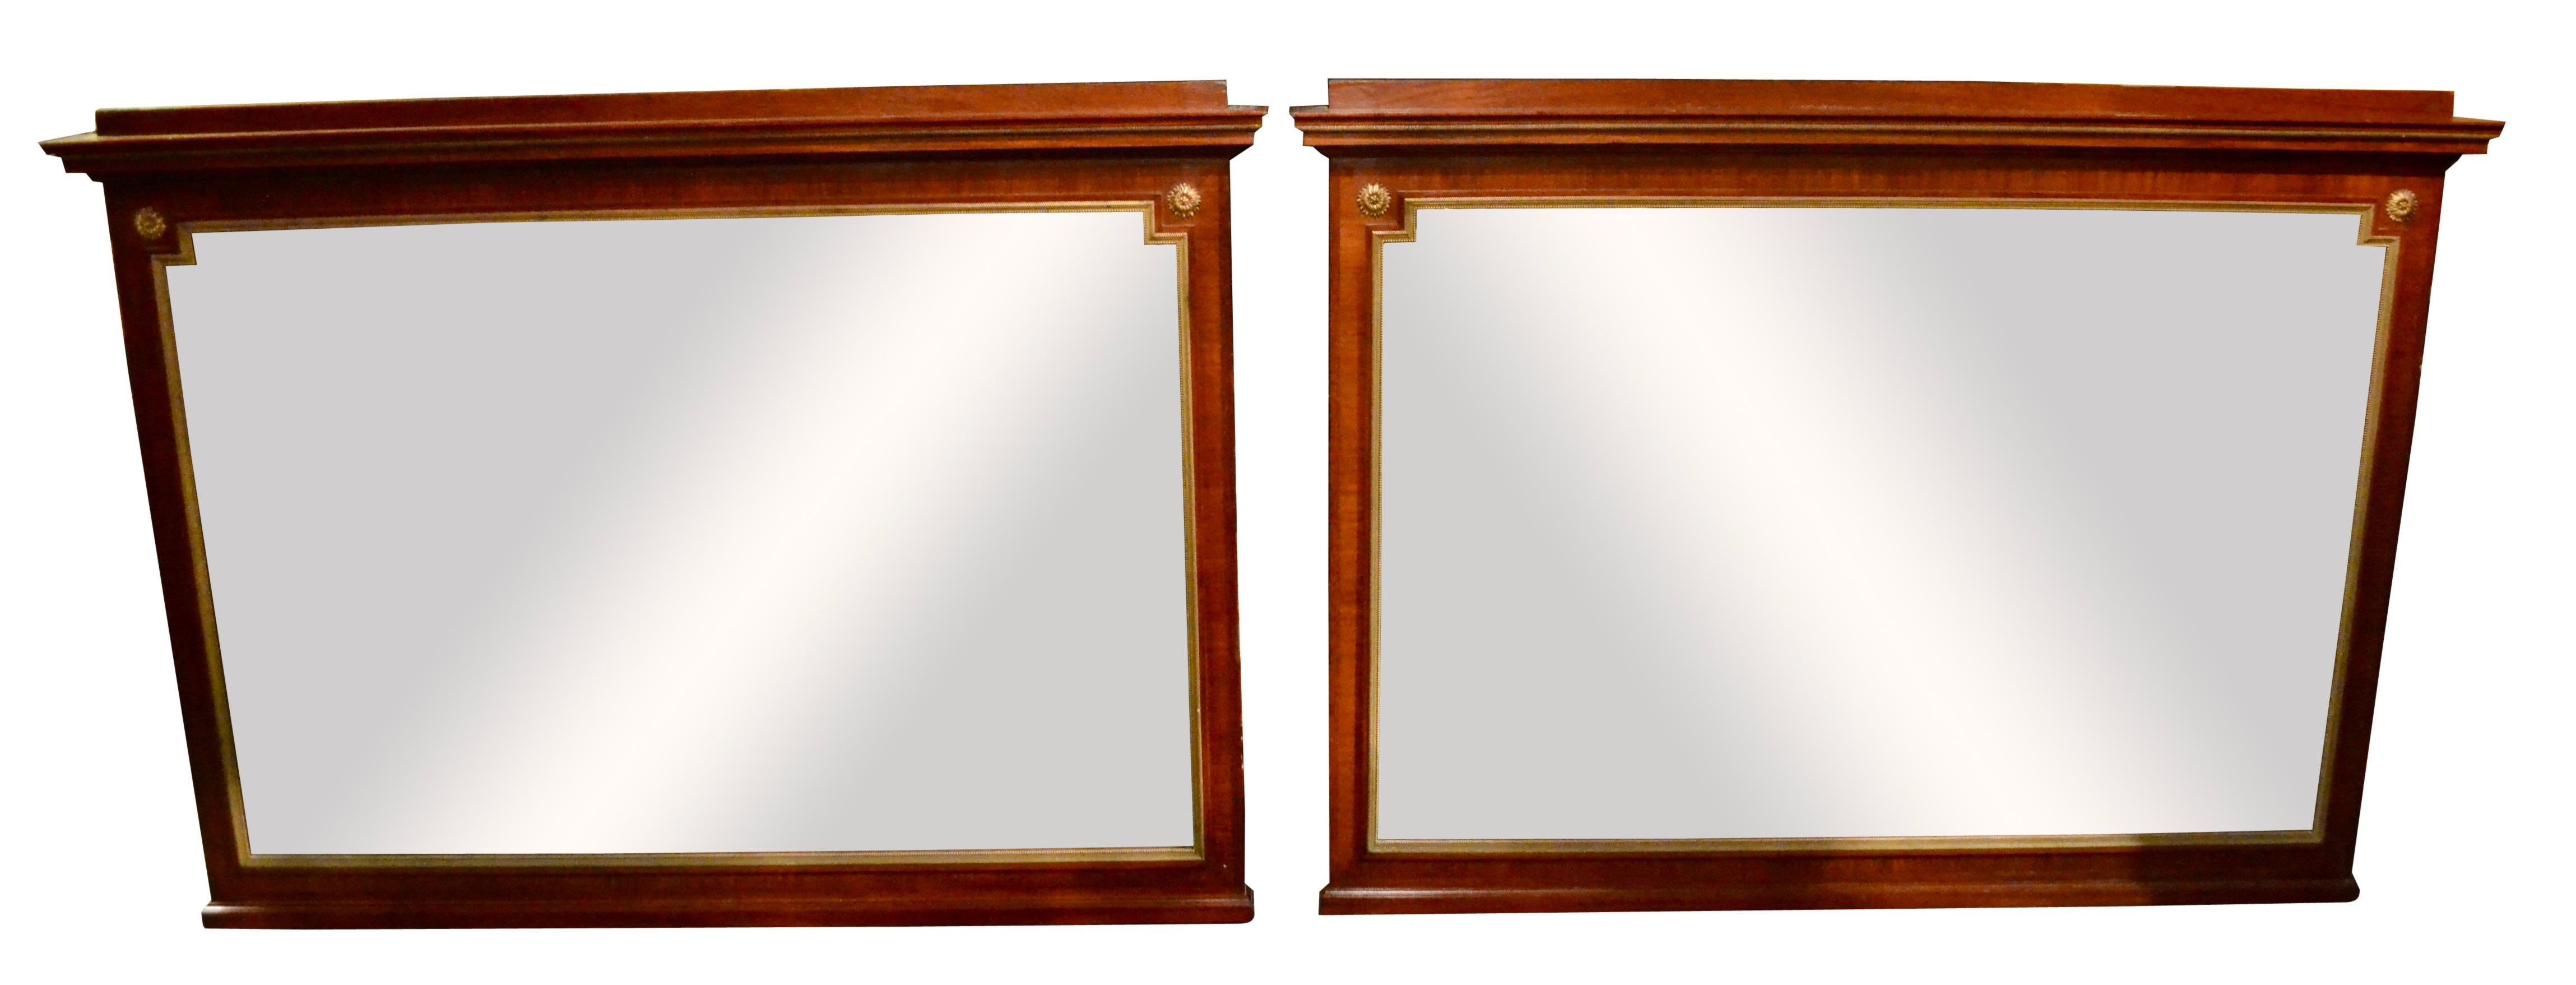 Ein feines Paar relativ großer rechteckiger Spiegel im Empire-Stil; die Rahmen haben eine vergoldete Bronzeleiste um das Glas herum und vergoldete Rosetten an den oberen beiden Seiten; die Spiegel sind an allen Seiten abgeschrägt; es gibt einen